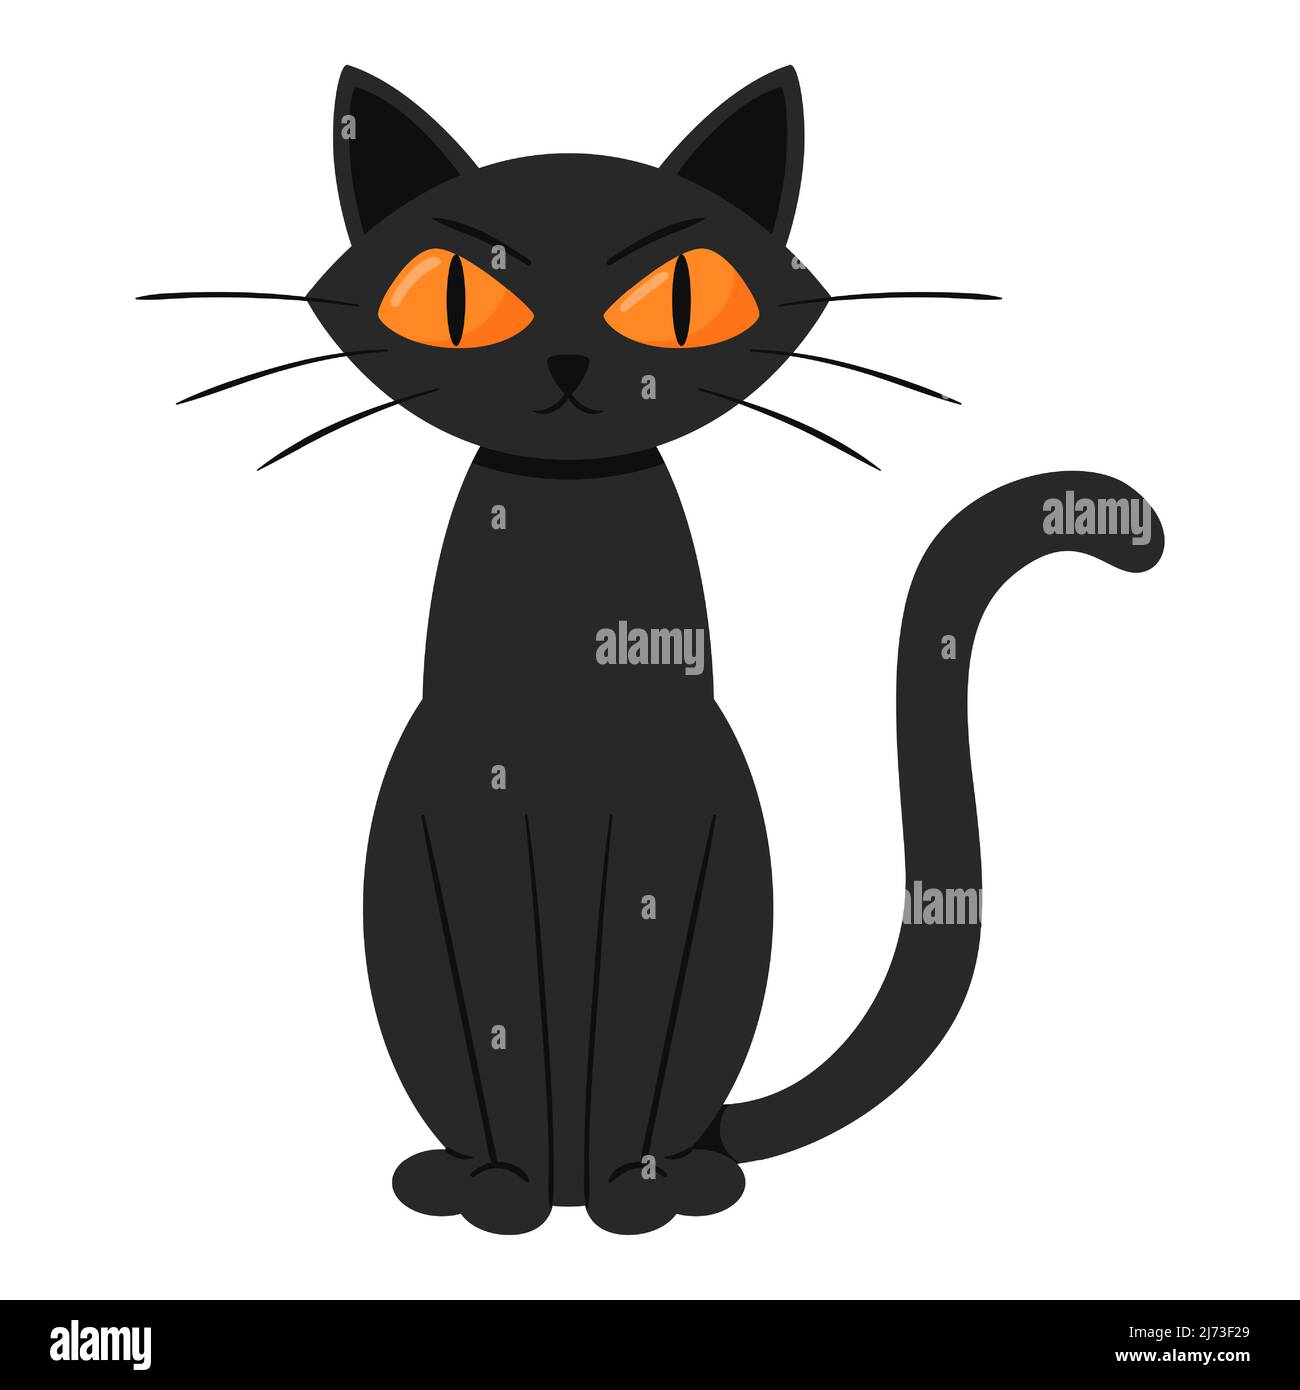 Eine wütende, düstere schwarze Katze sitzt. Flacher Cartoon-Stil. Stock Vektor